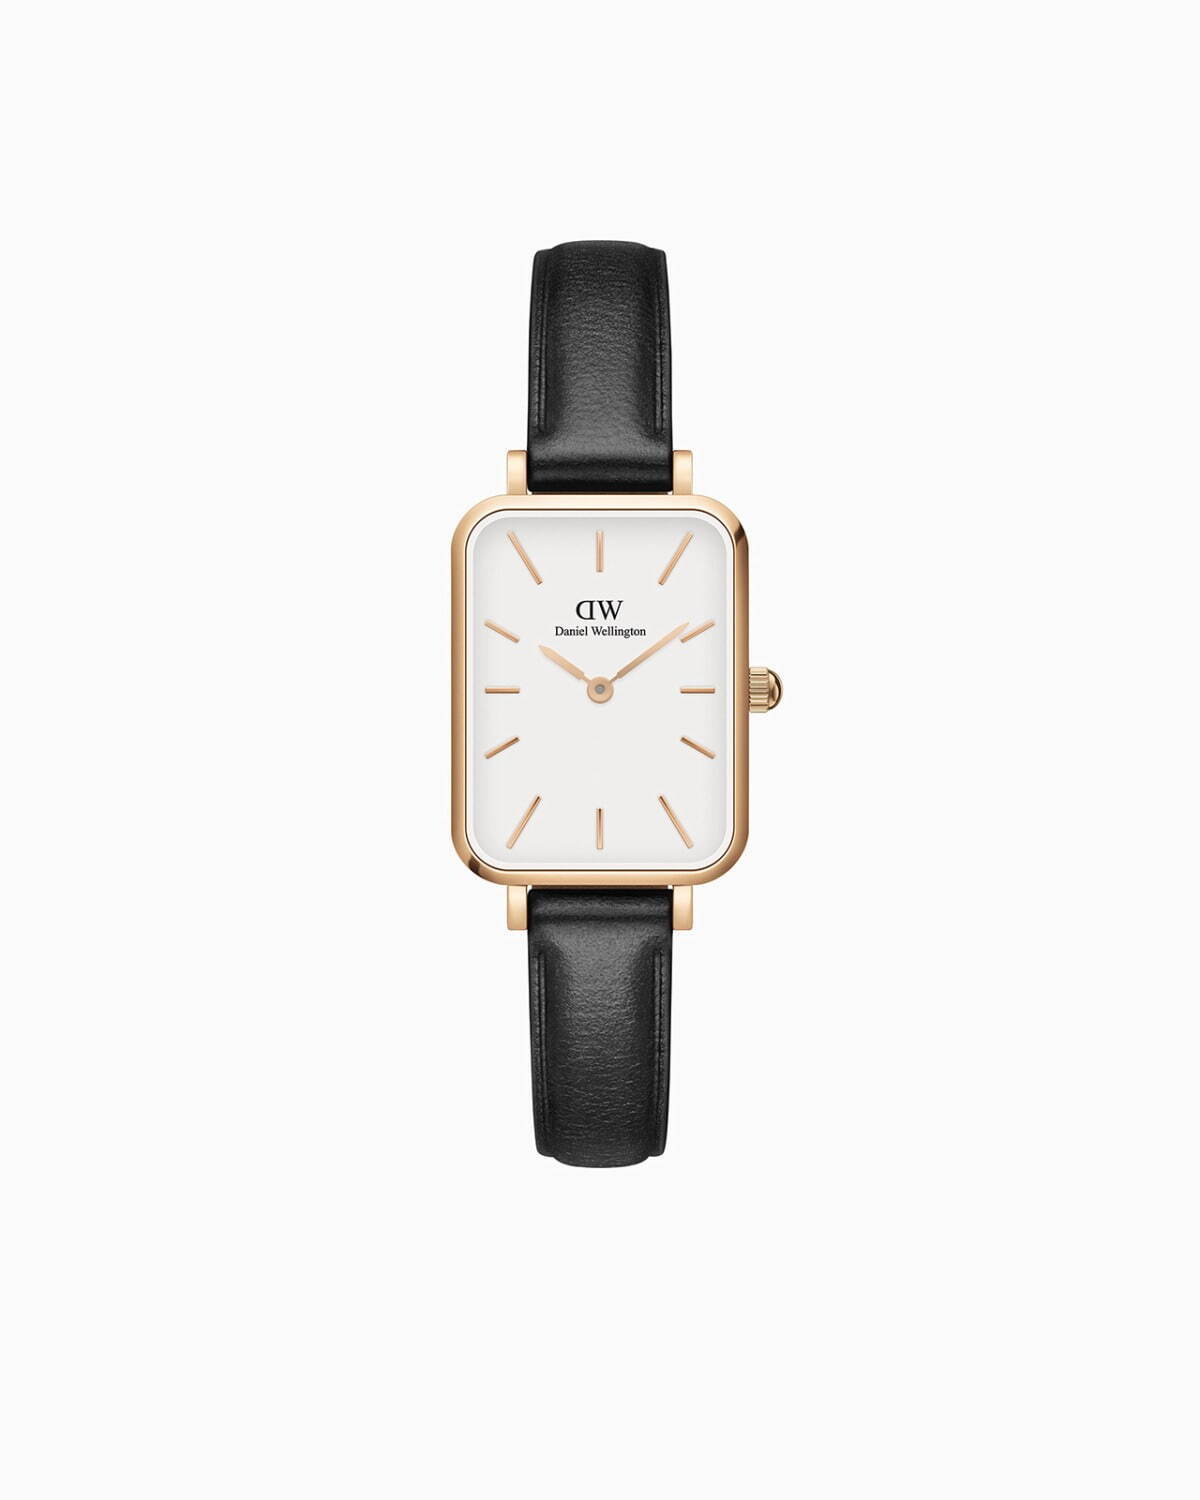 ダニエル ウェリントンの新作腕時計「クアドロ」ブランド初のスクエア 